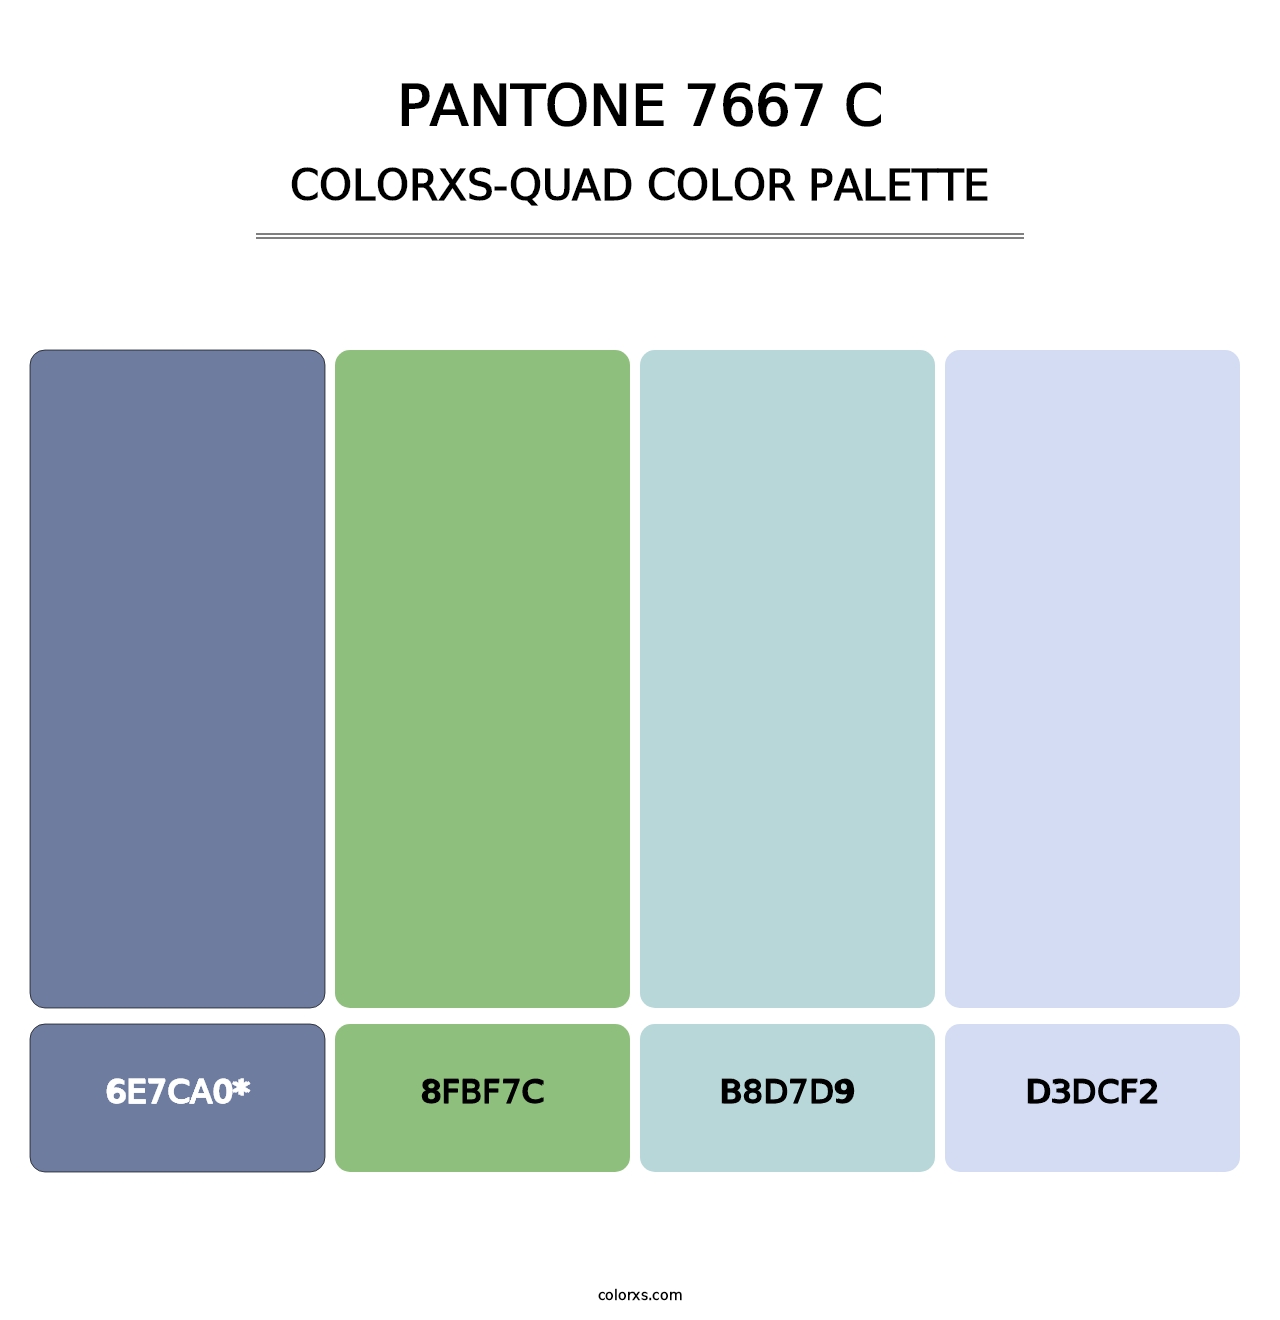 PANTONE 7667 C - Colorxs Quad Palette